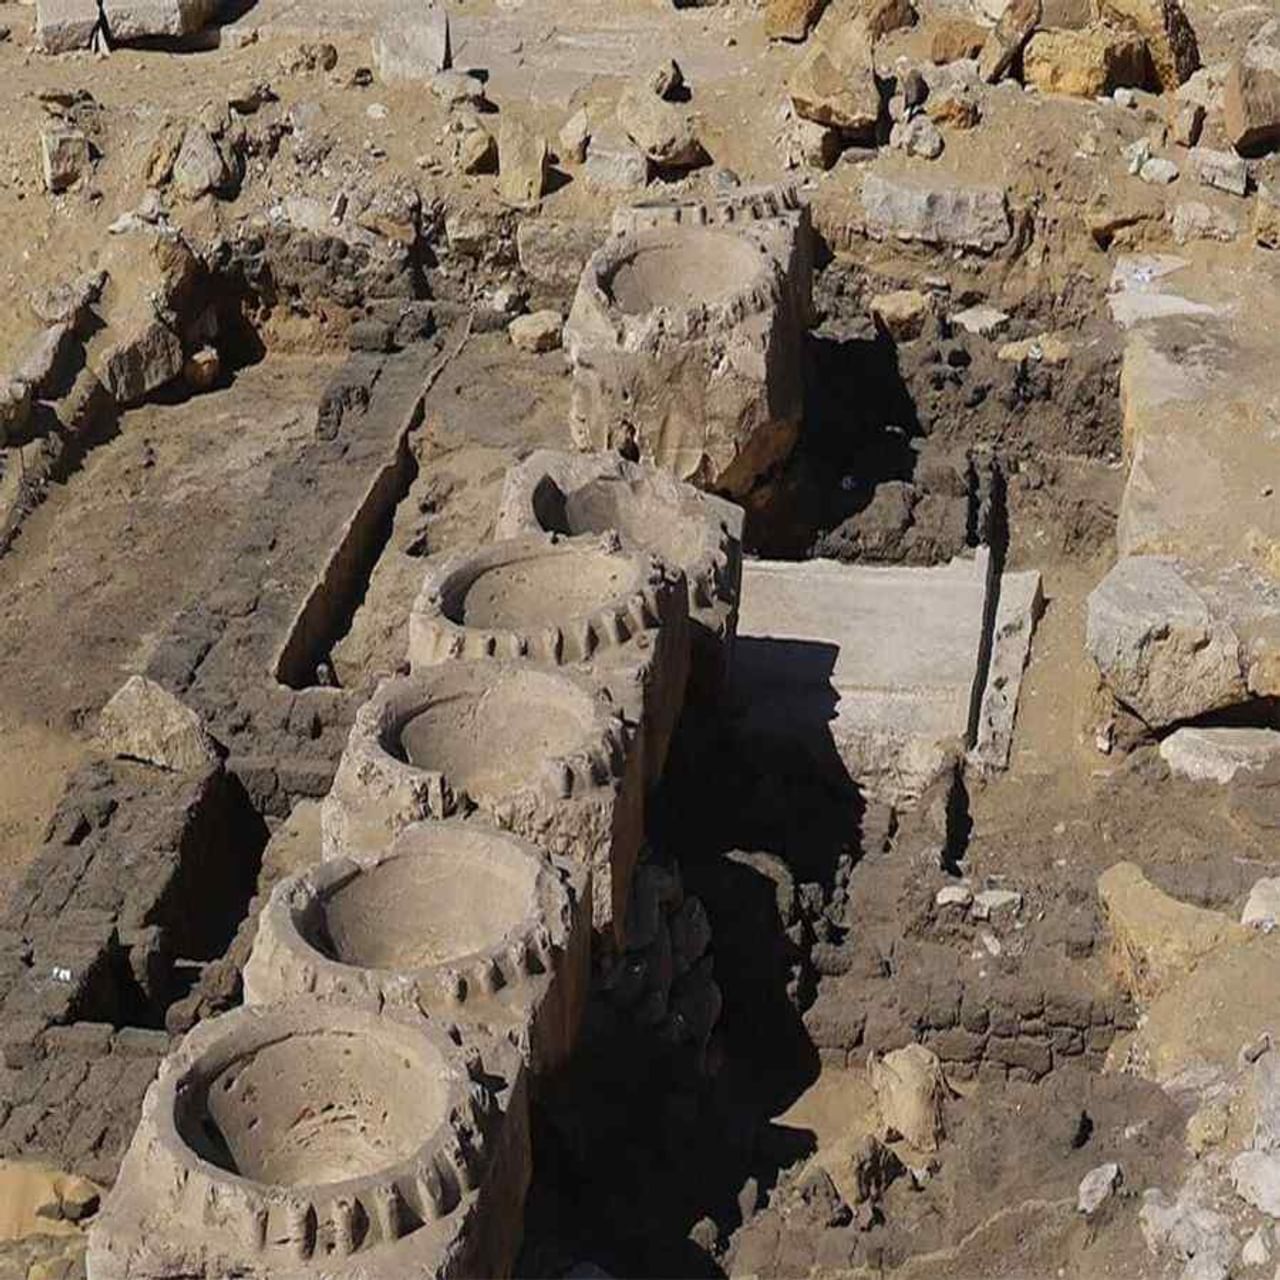 ઈજિપ્તની રાજધાની કાહિરાના દક્ષિણ ભાગમાં અબુસીર વિસ્તારમાં આ મંદિર મળ્યુ છે. જે King Nyuserreના મંદિર નીચે હતુ. ઈજિપ્તના પૂરાતત્વ વિભાગને આ મંદિરના અવશેષો મળ્યા છે. આ અવશેષોમાં કાચી ઈંટો પણ મળી આવી છે.